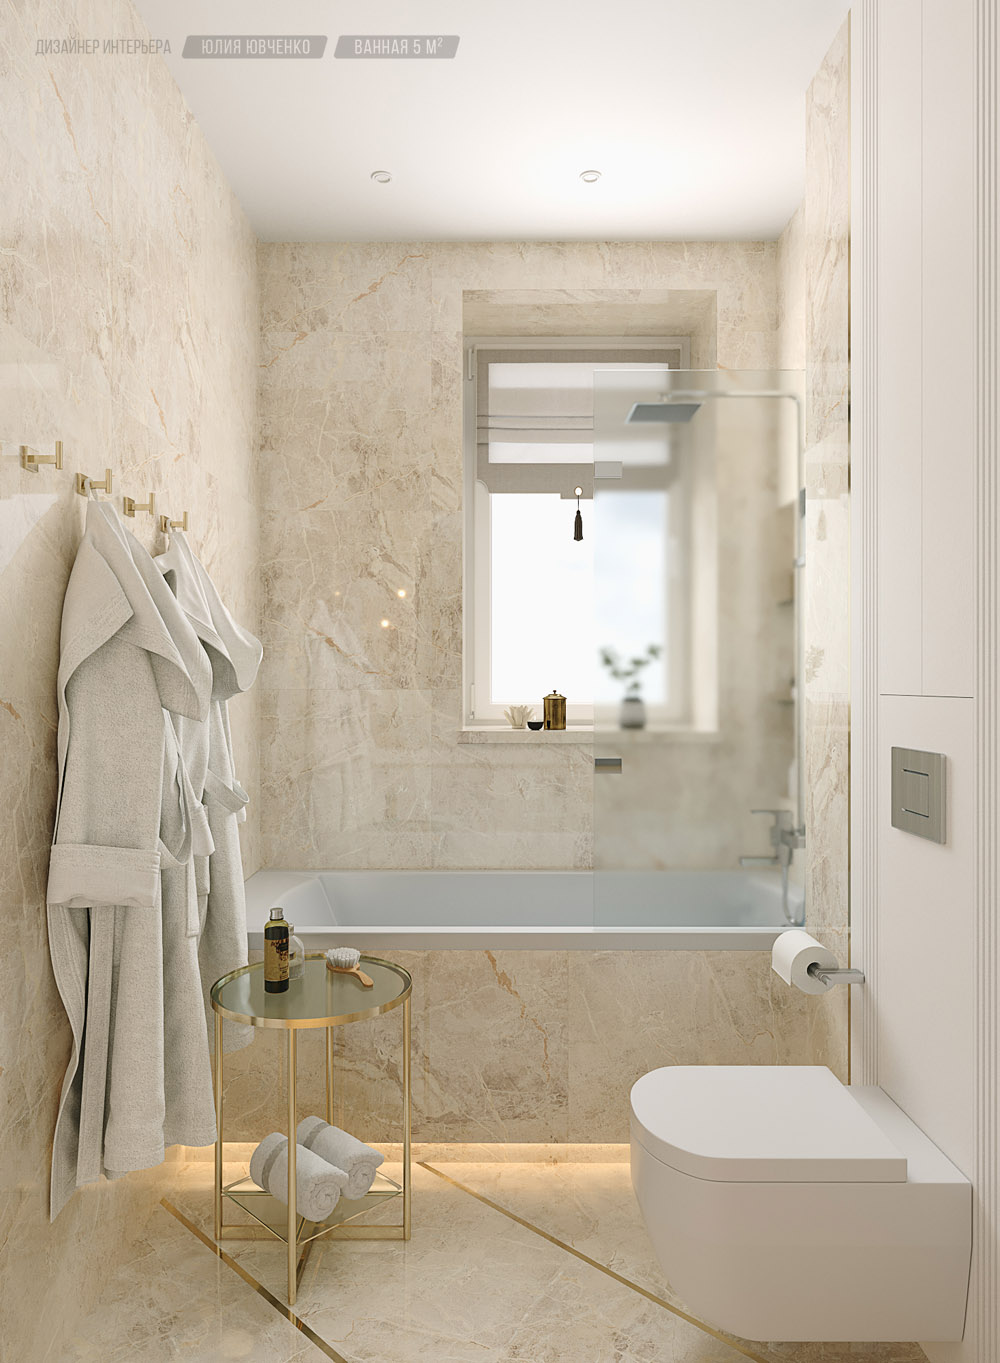 Дизайн интерьера ванной комнаты: ТОП решений современного дизайна ванных с фото - ArtProducts